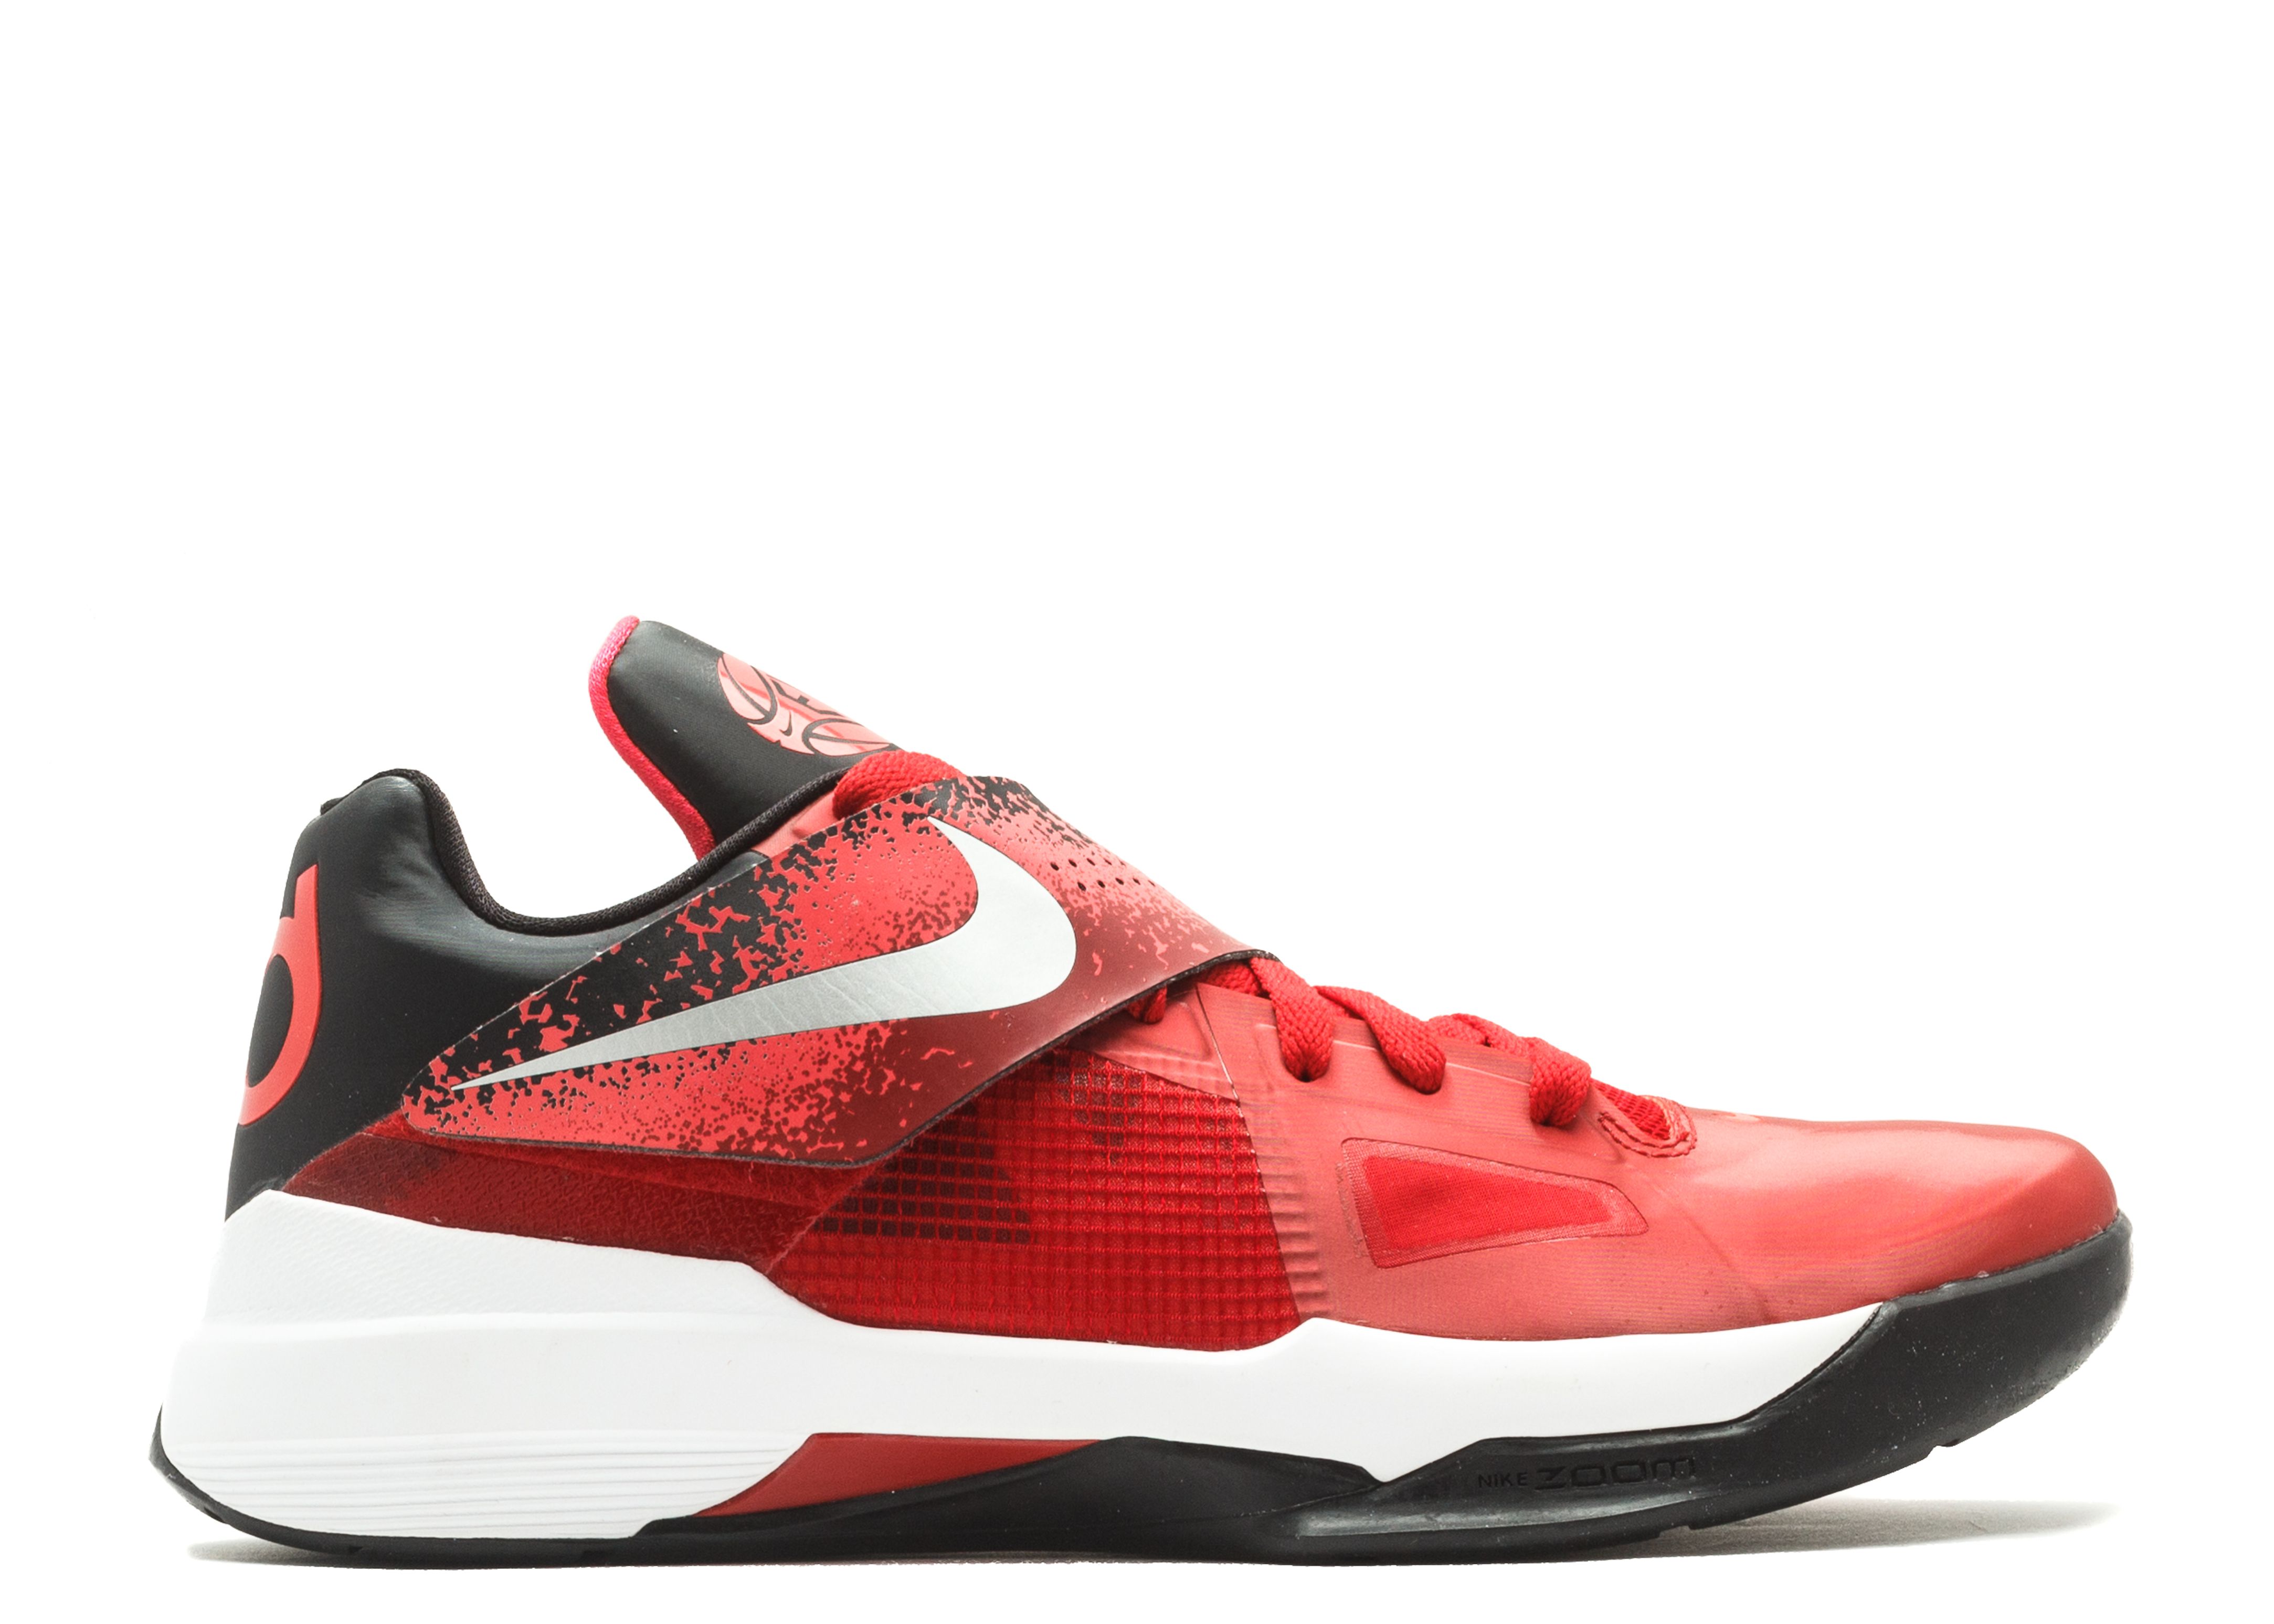 Zoom KD 4 'EYBL' - Nike - 473679 600 - sport red/metallic silver 